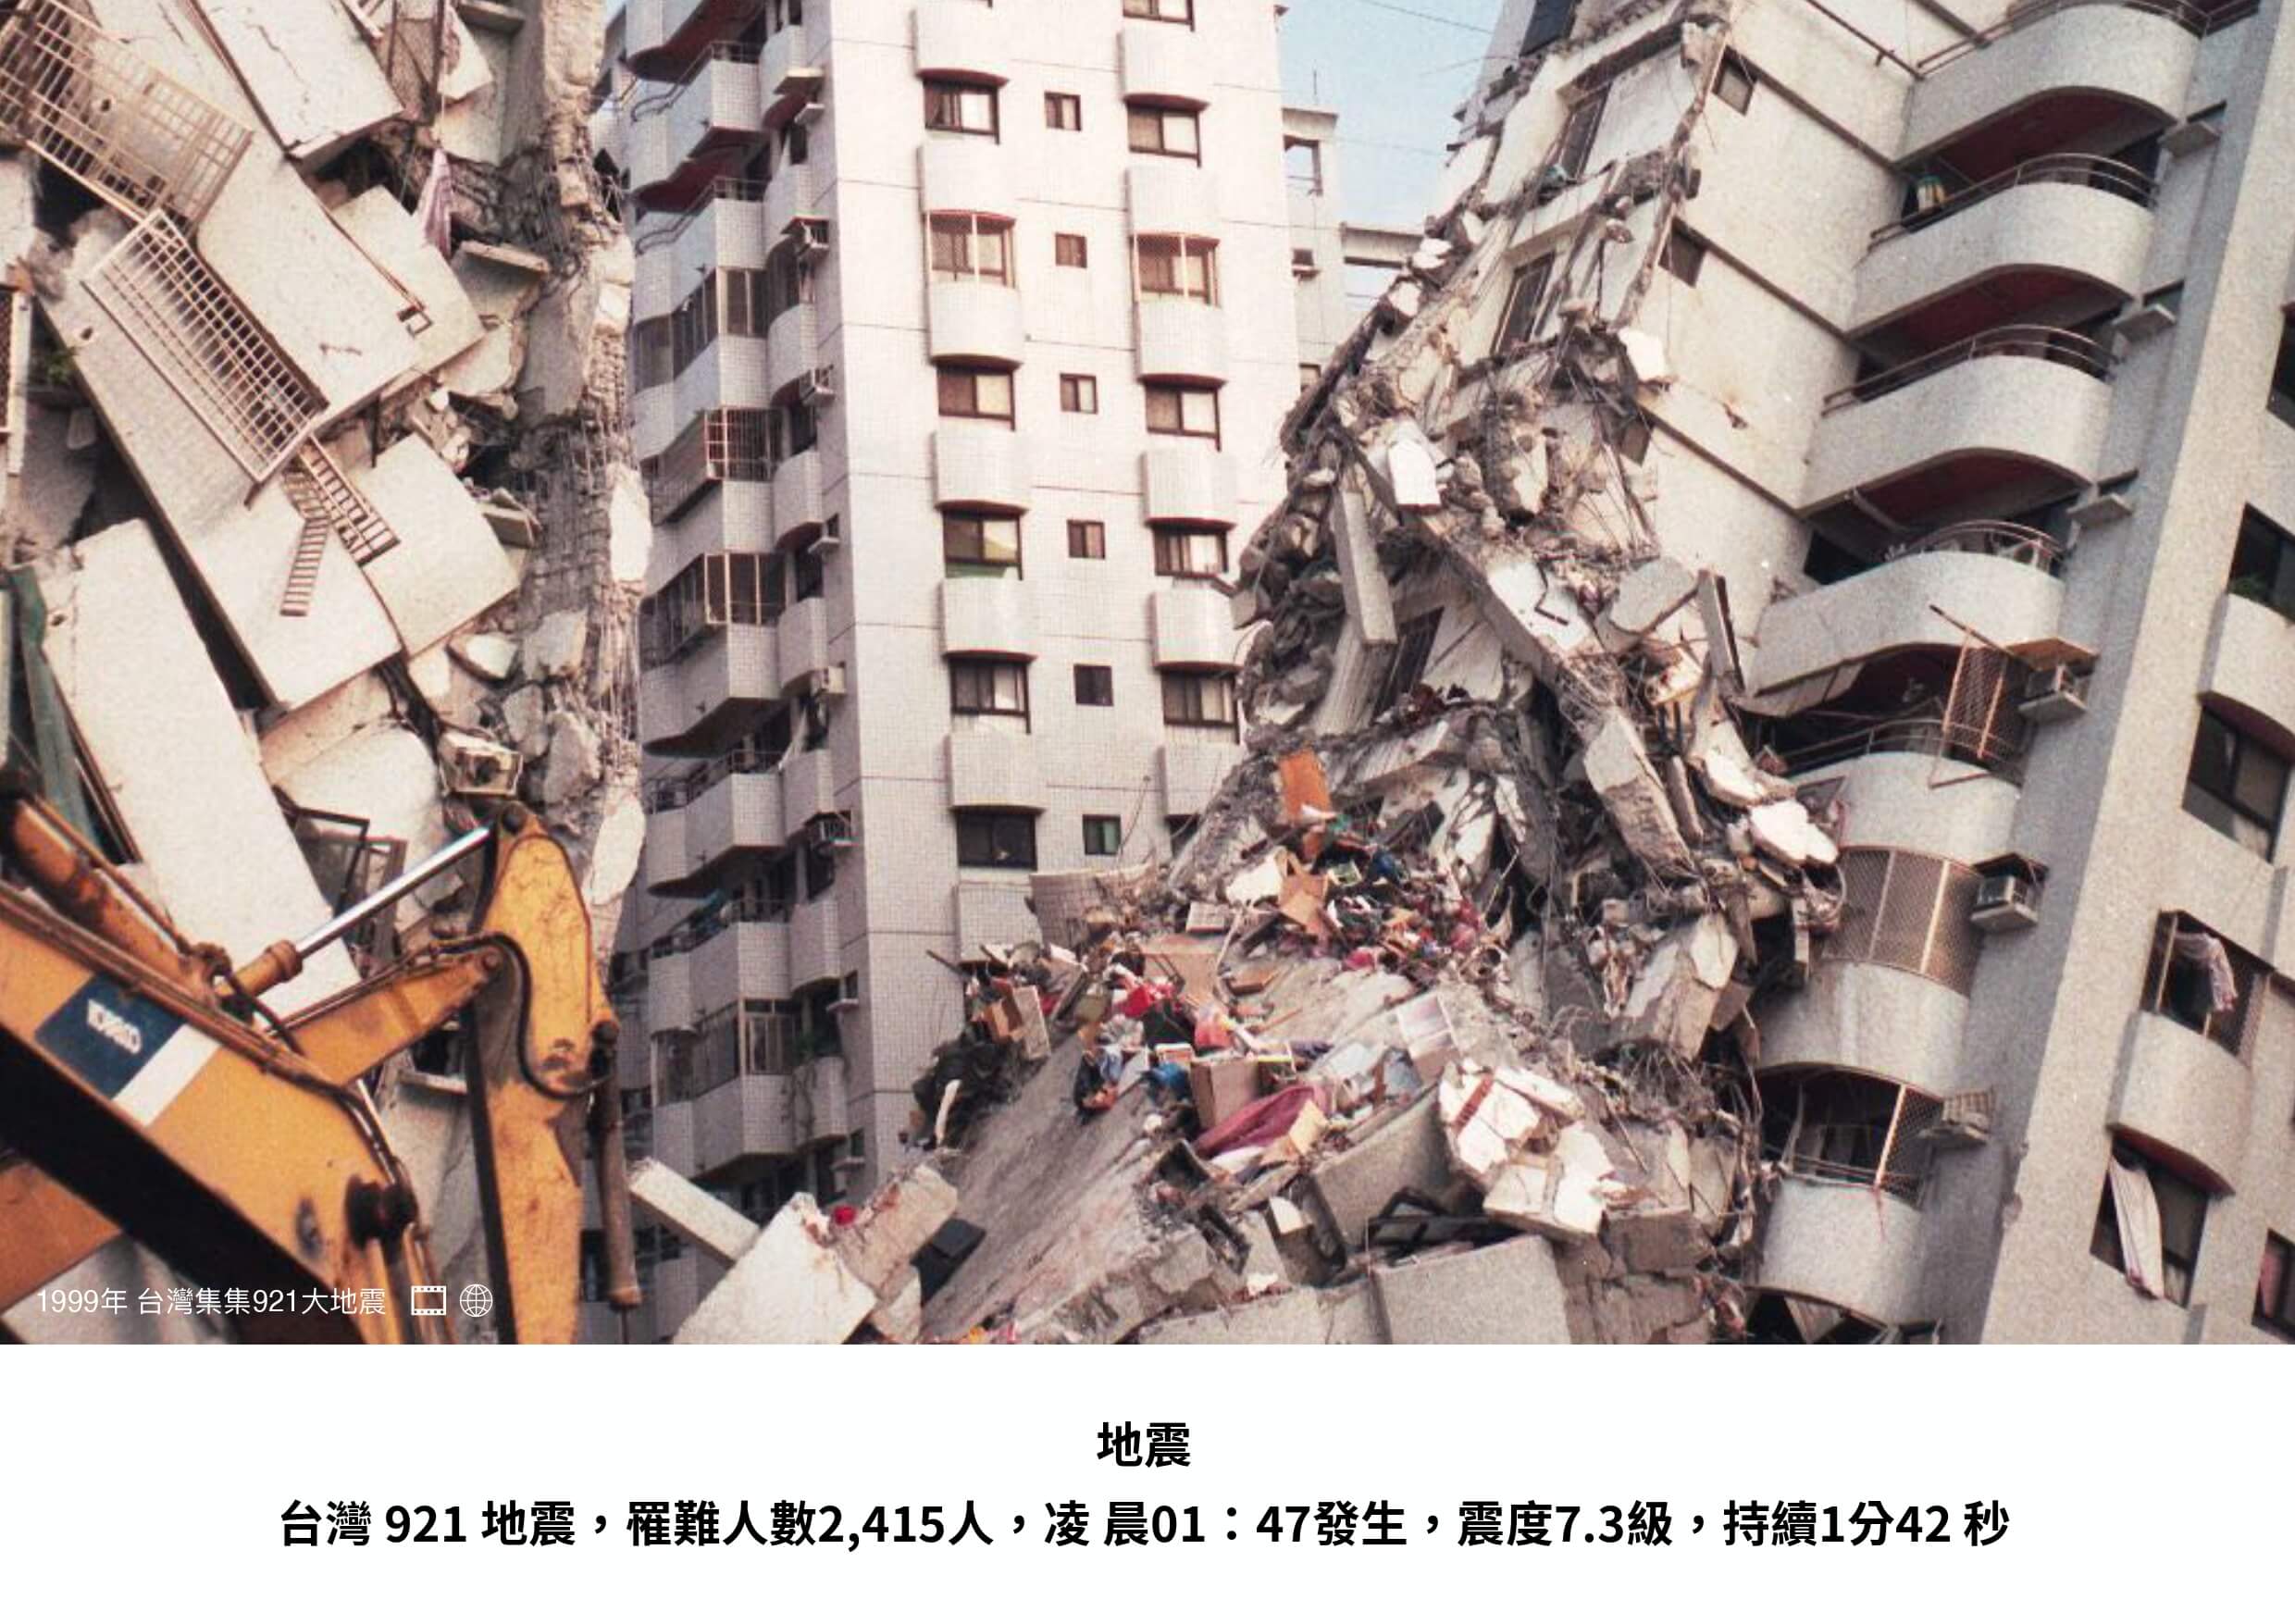 1999年台灣集集921大地震紀錄照片